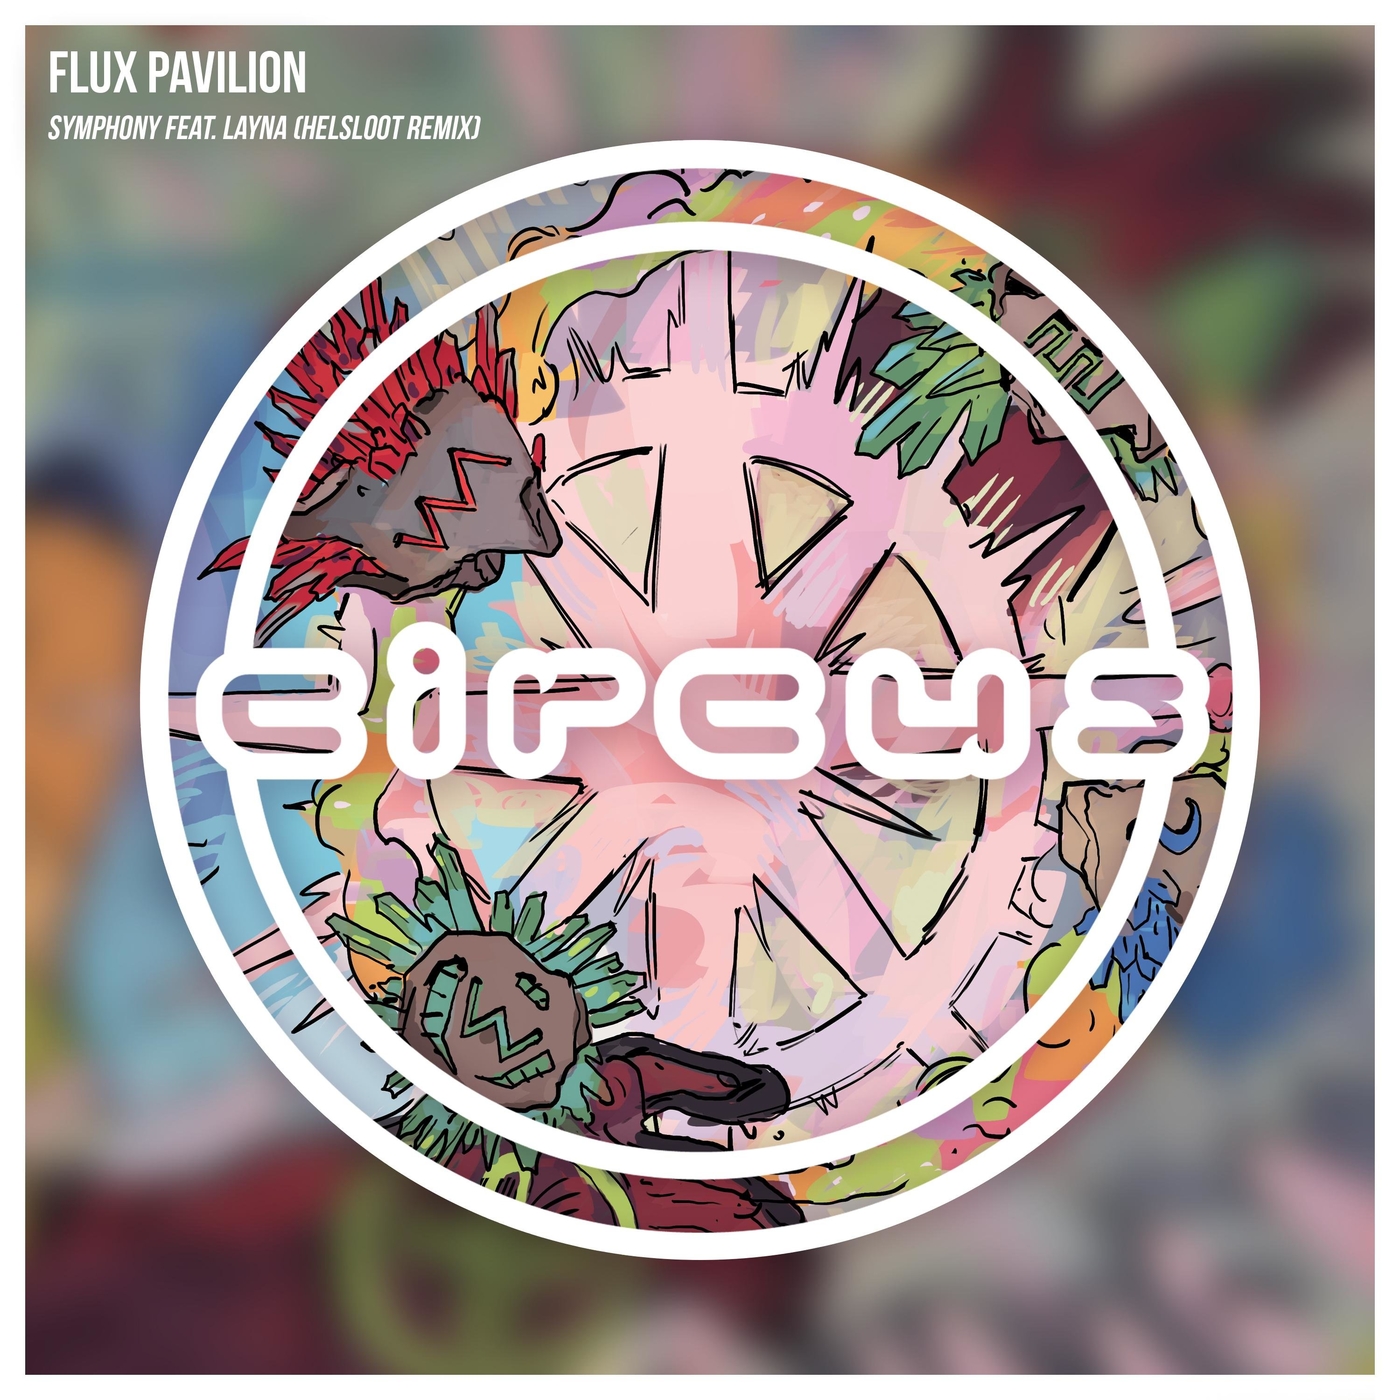 Flux Pavilion - Symphony (Helsloot Remix) [CR482]